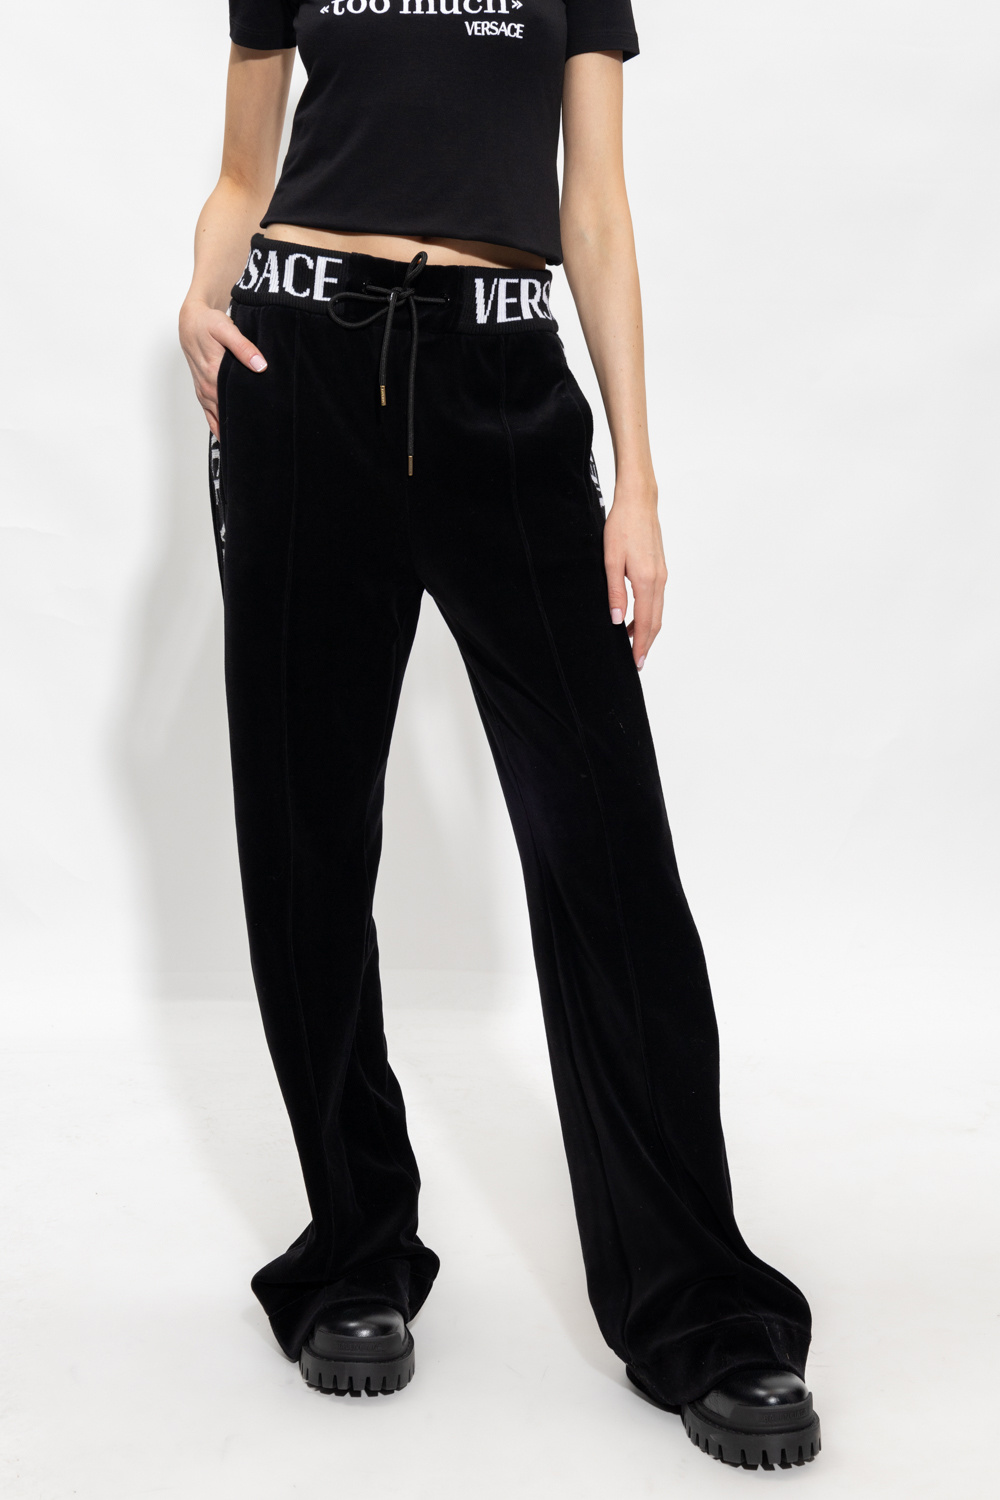 Versace Velvet trousers